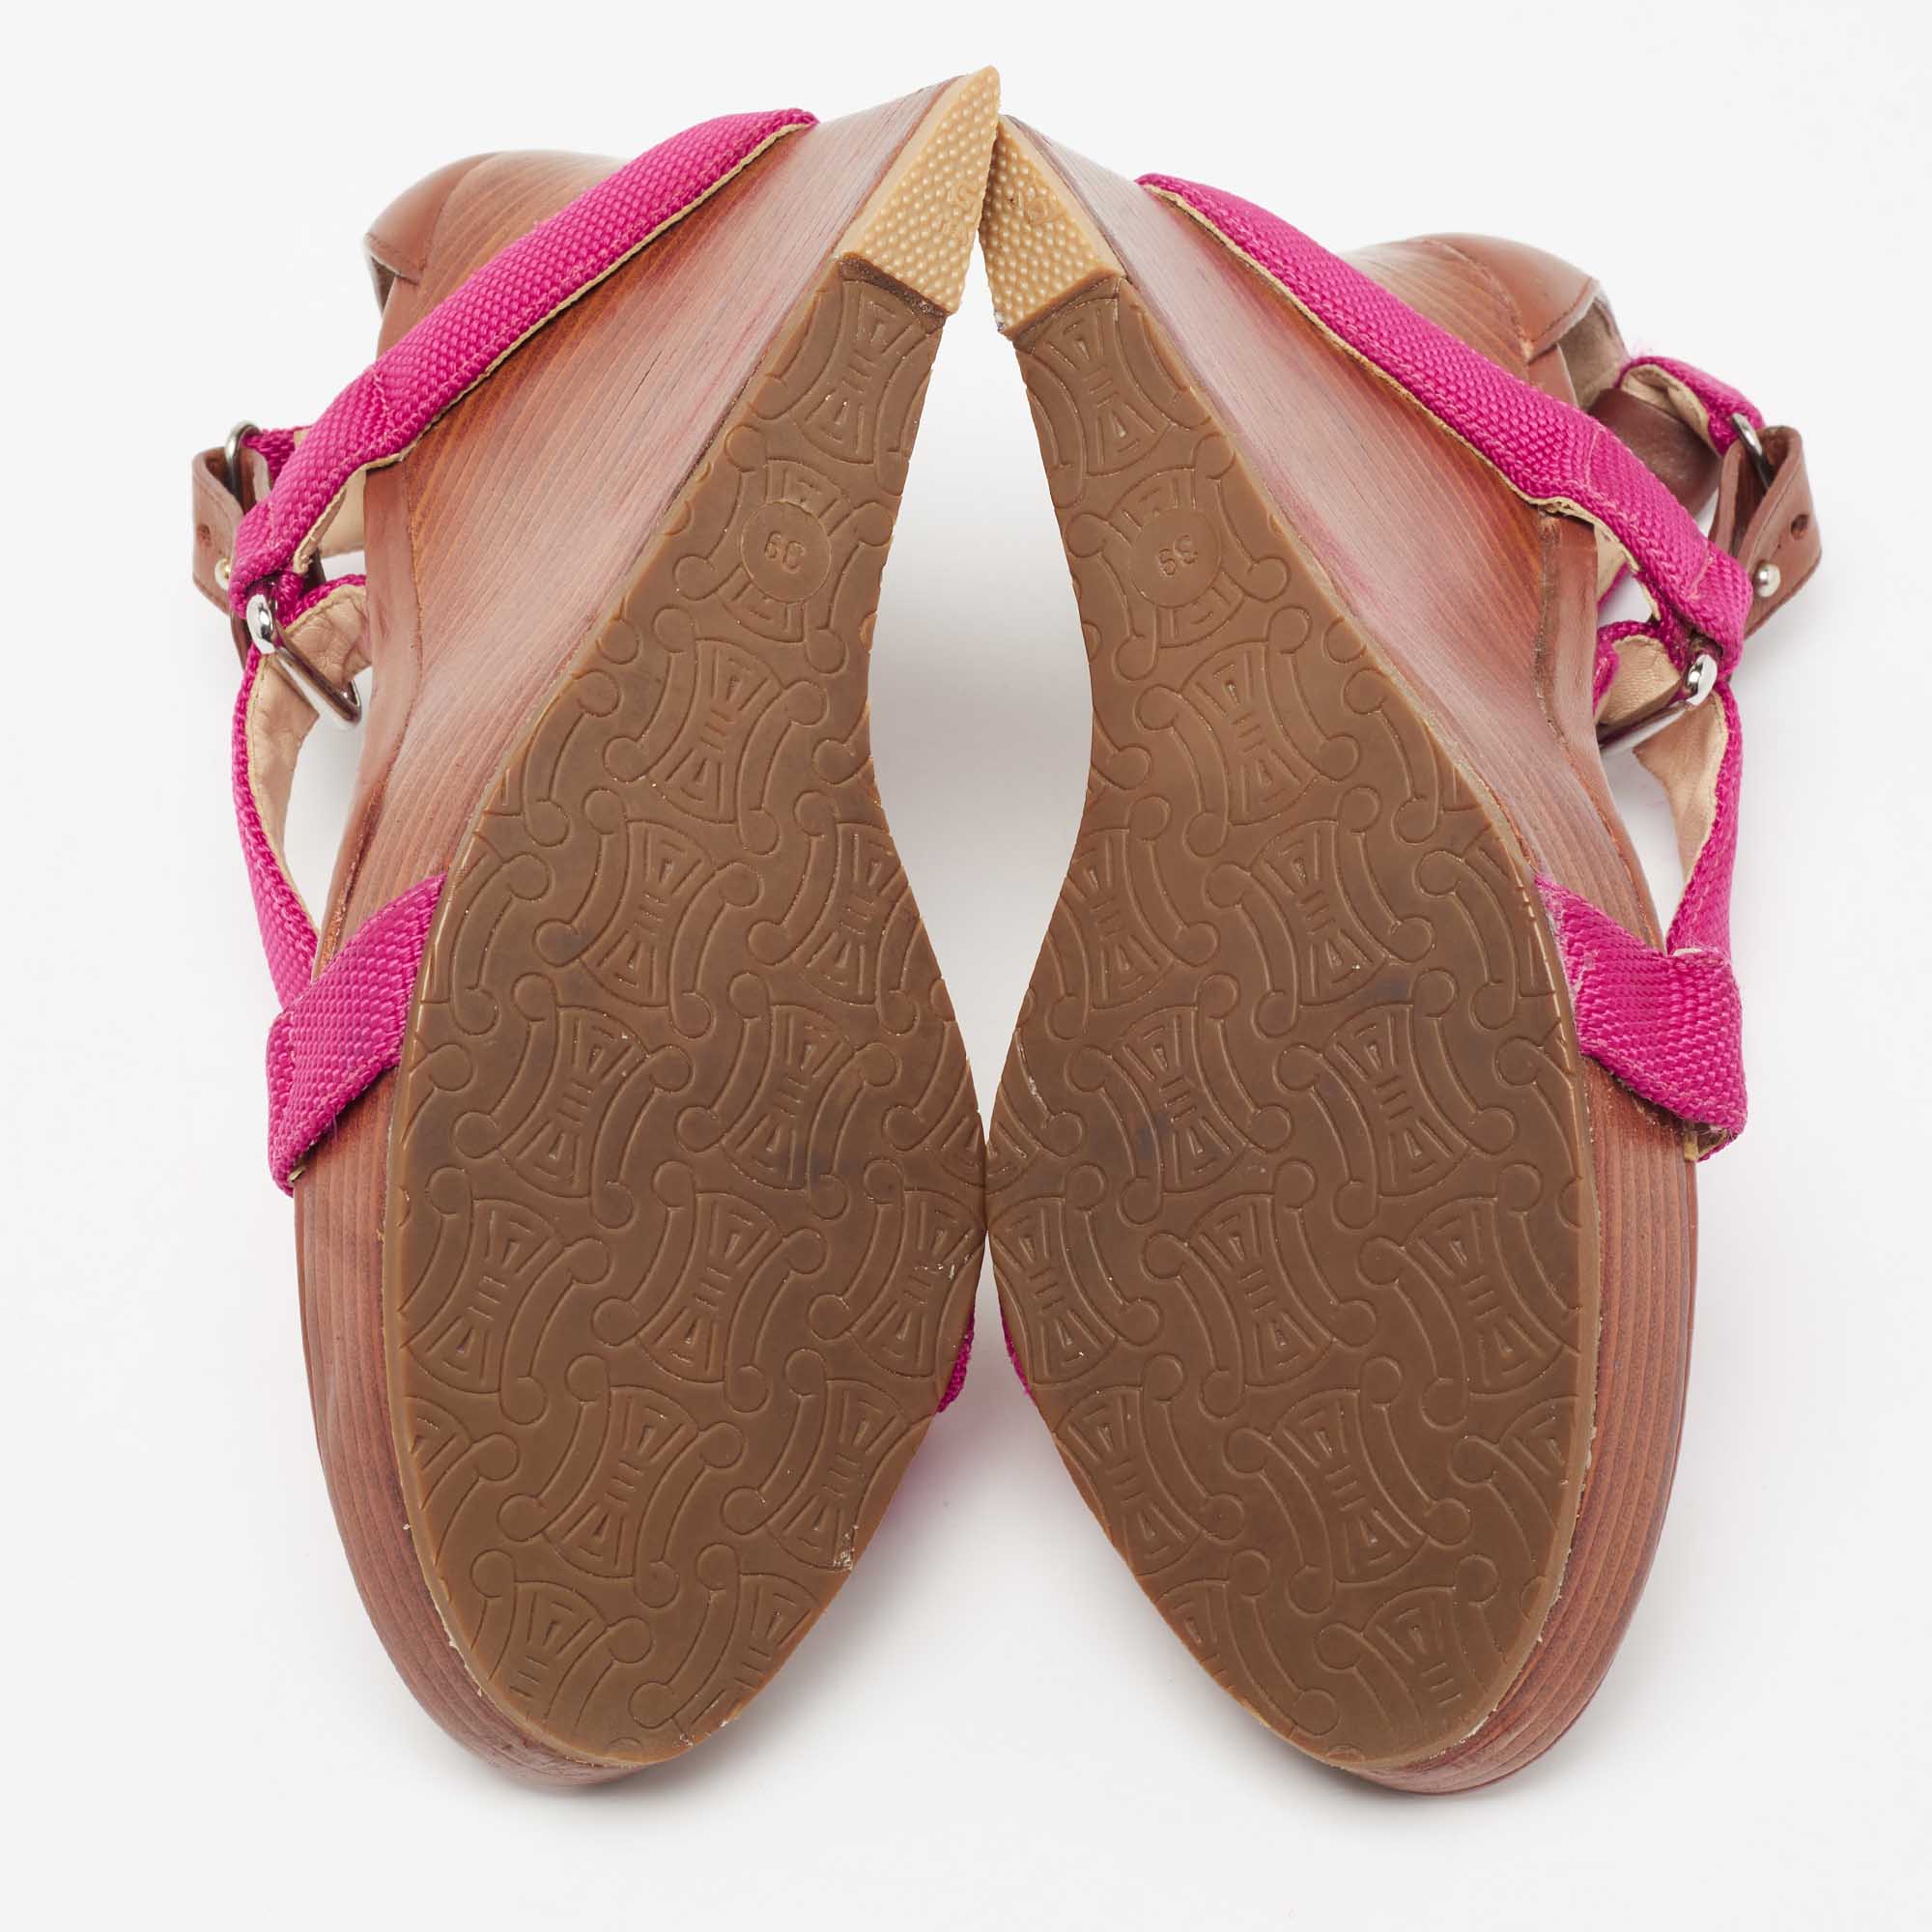 Céline Pink Canvas T-Strap Wedge Slingback Sandals Size 39